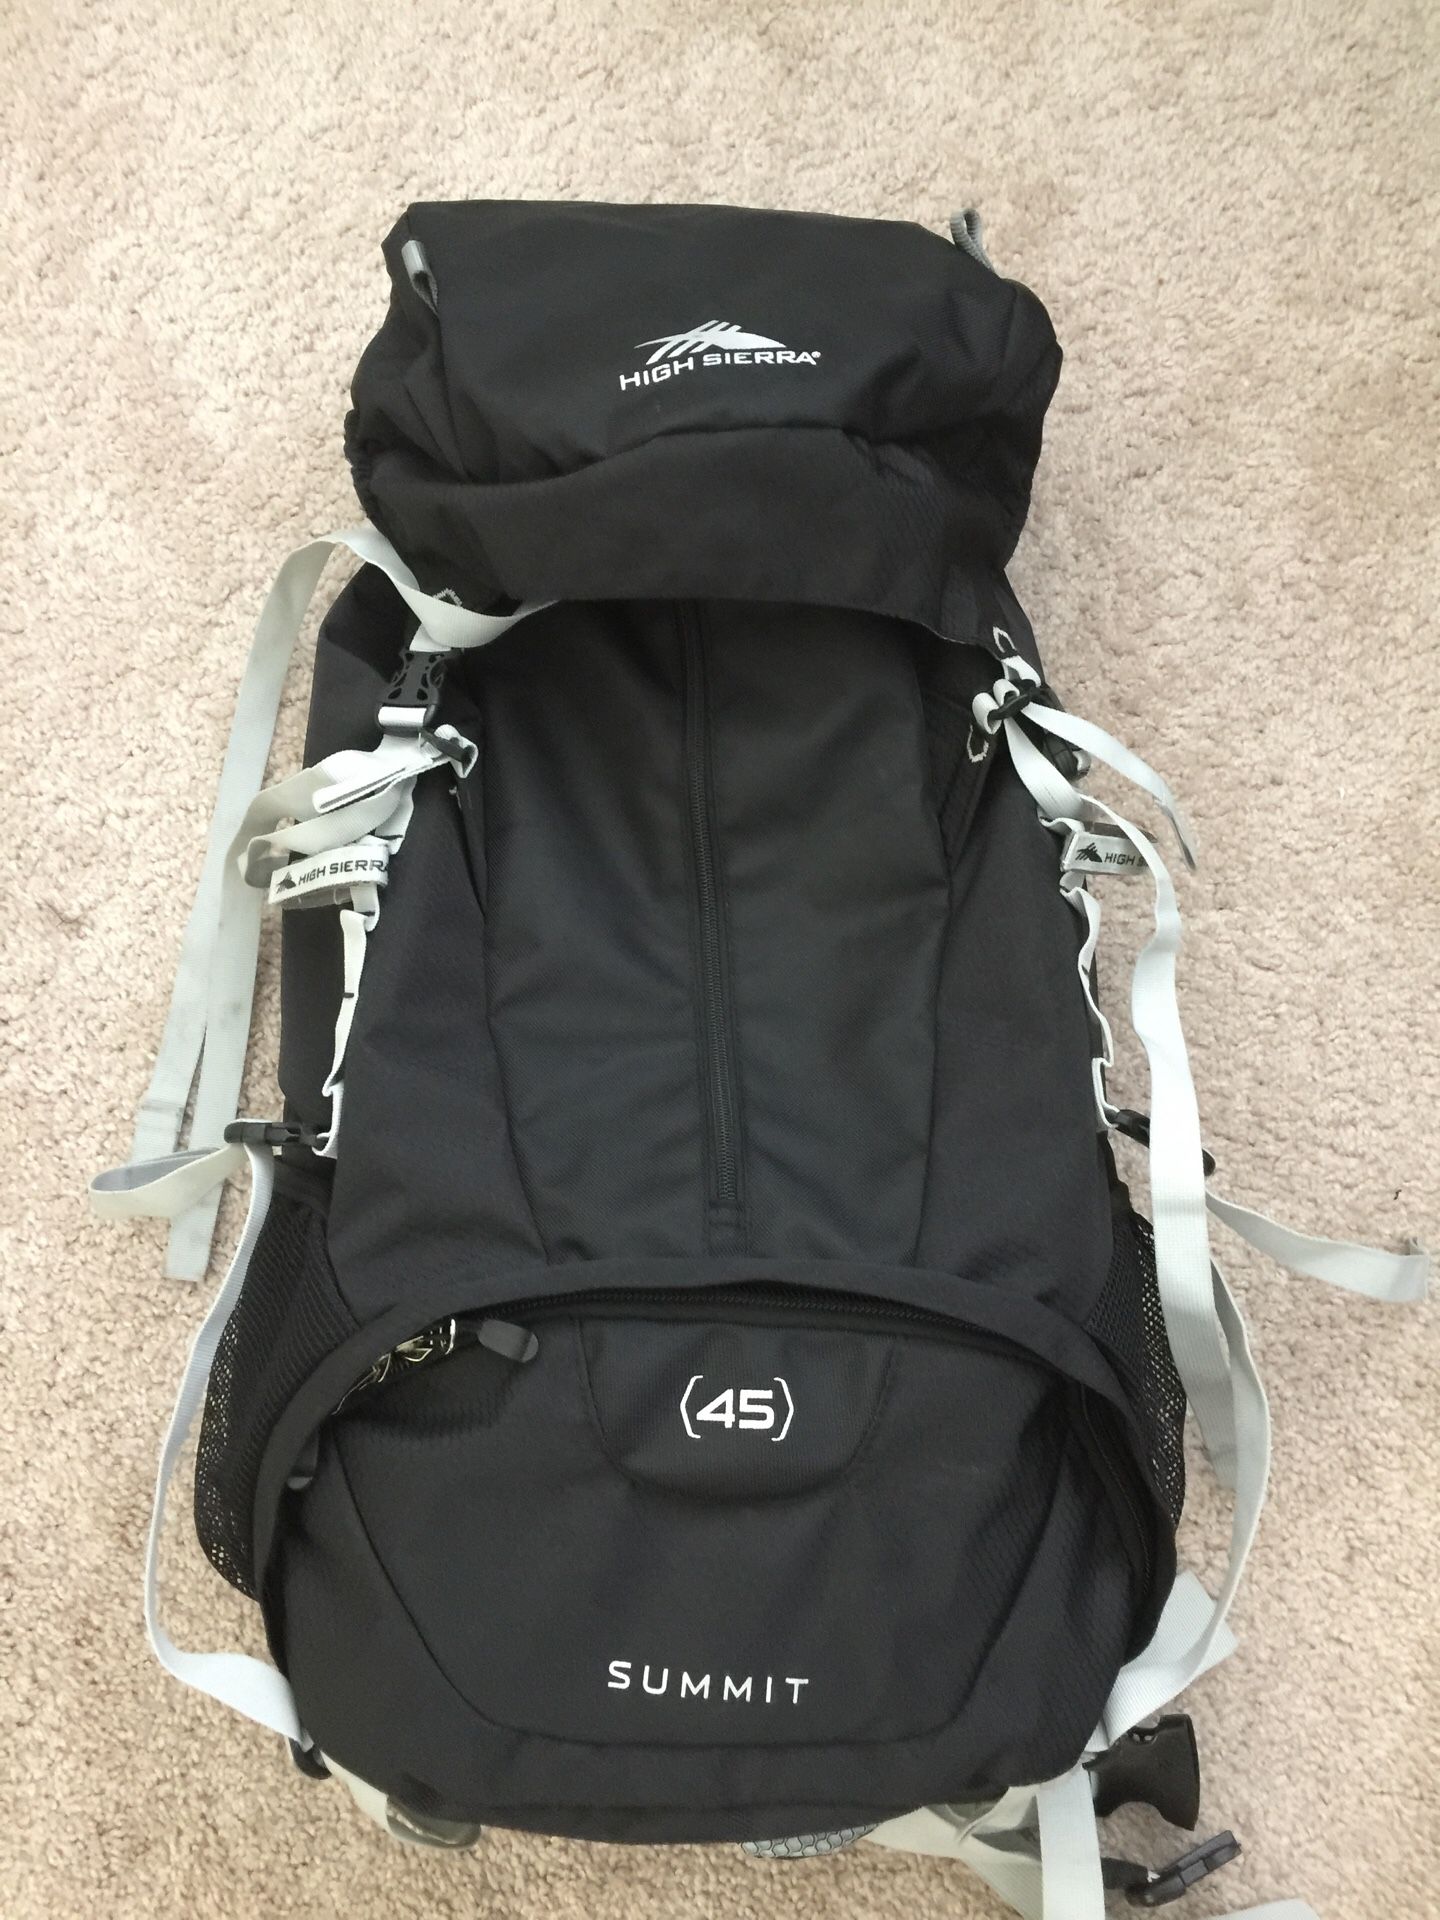 High Sierra travel back pack (45L)